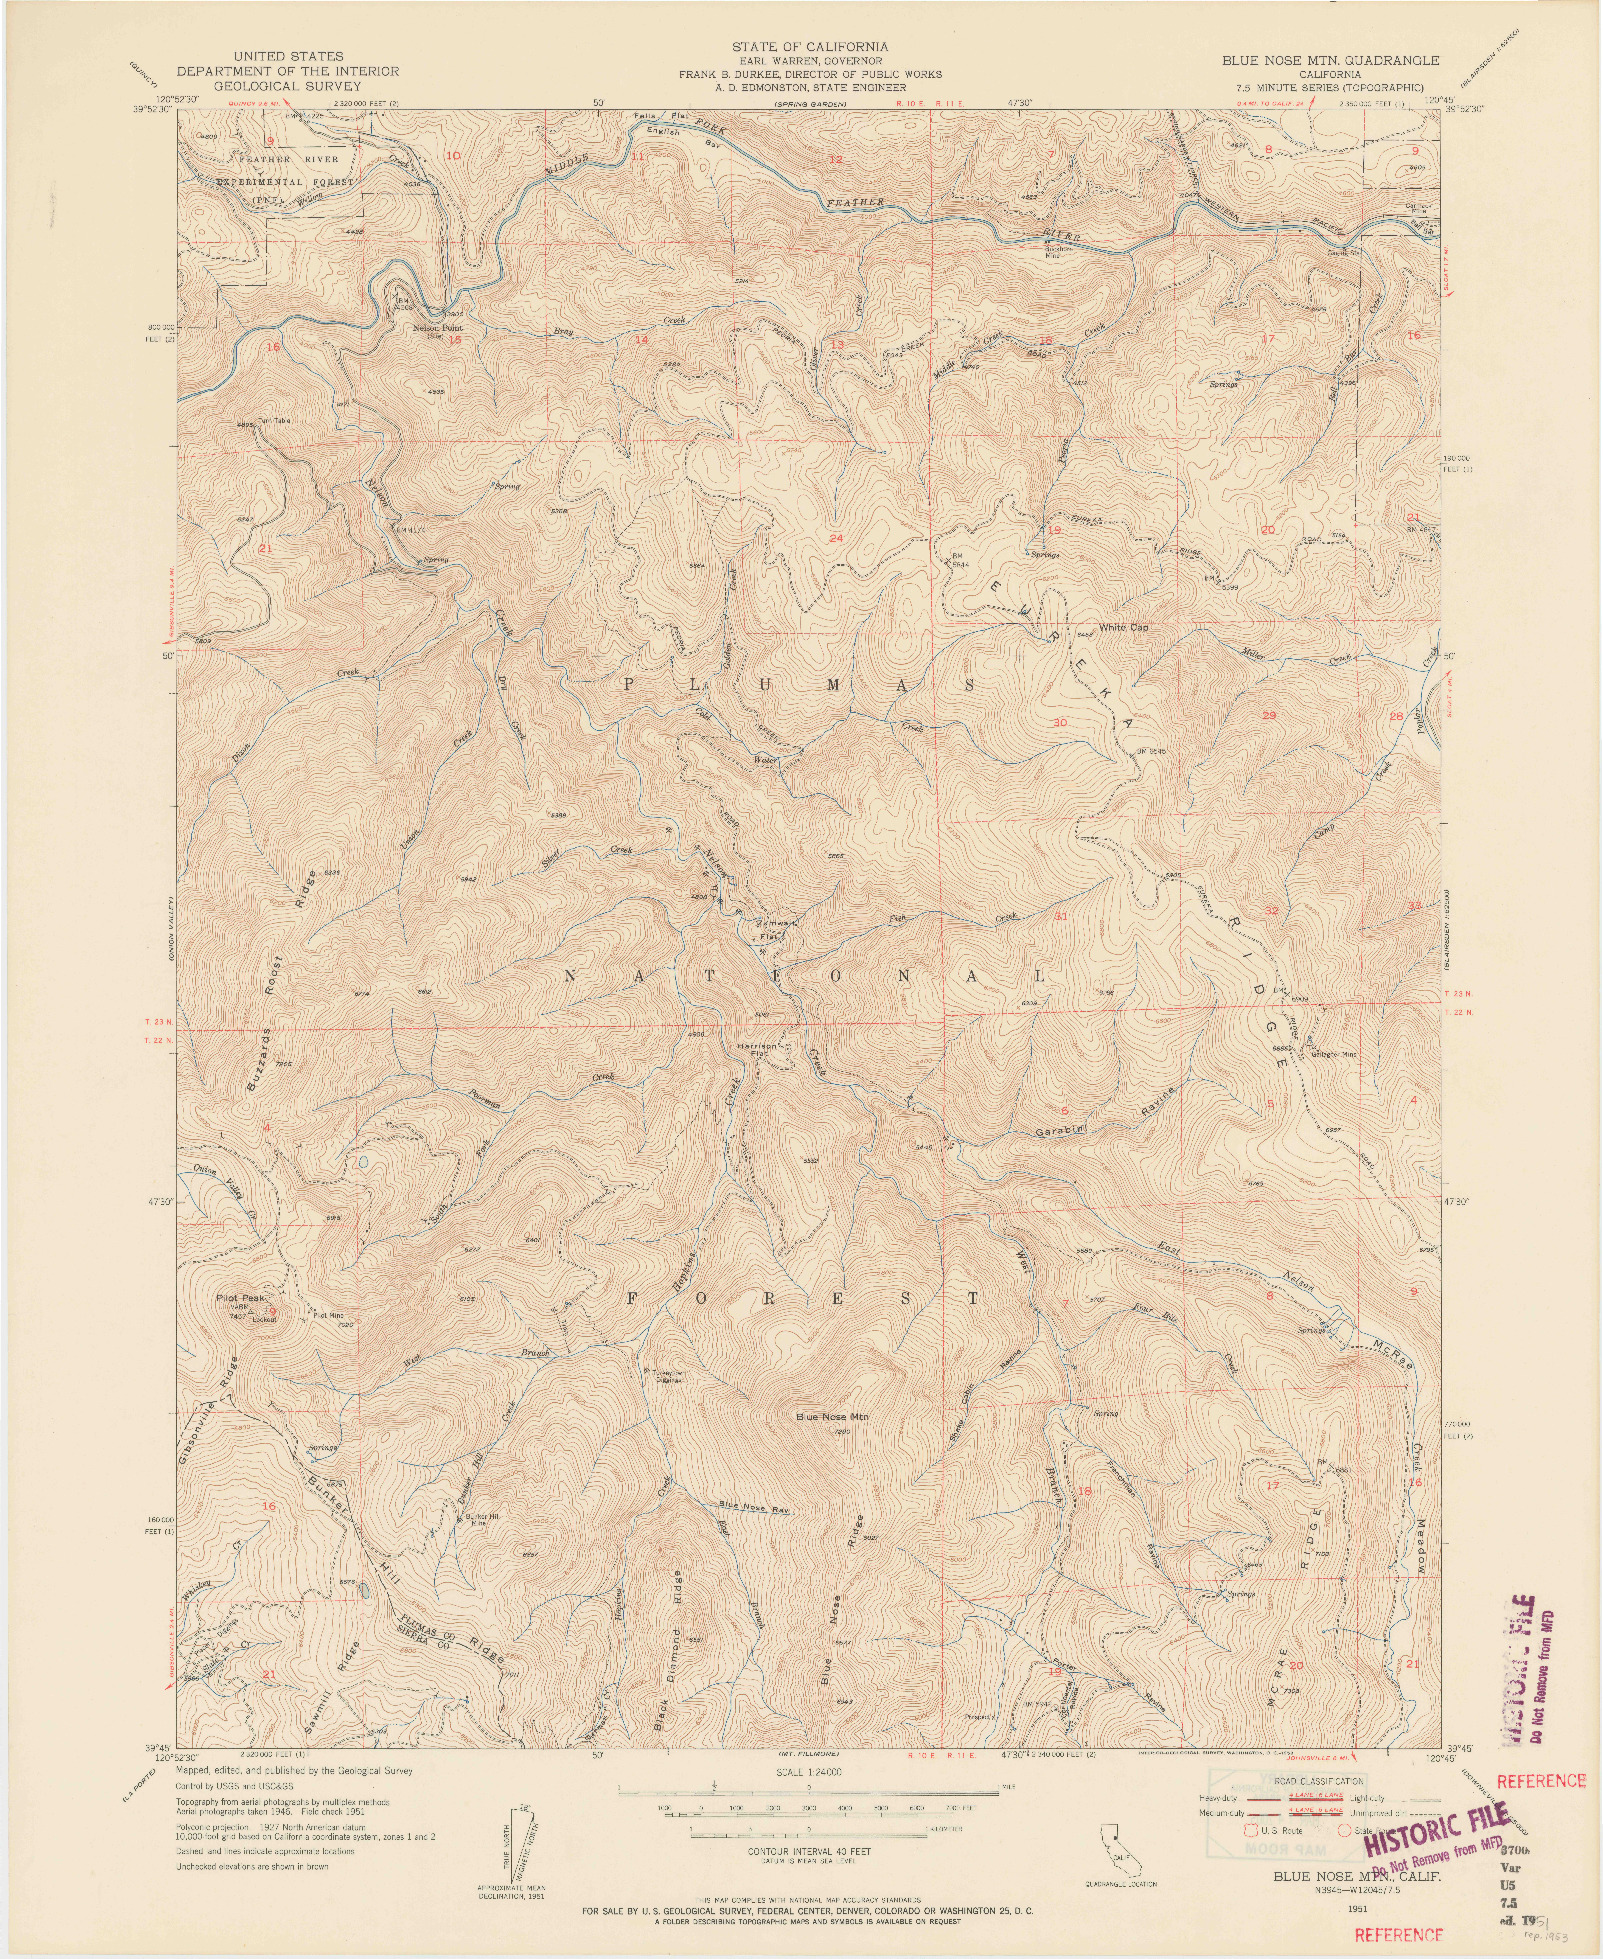 USGS 1:24000-SCALE QUADRANGLE FOR BLUE NOSE MTN, CA 1951